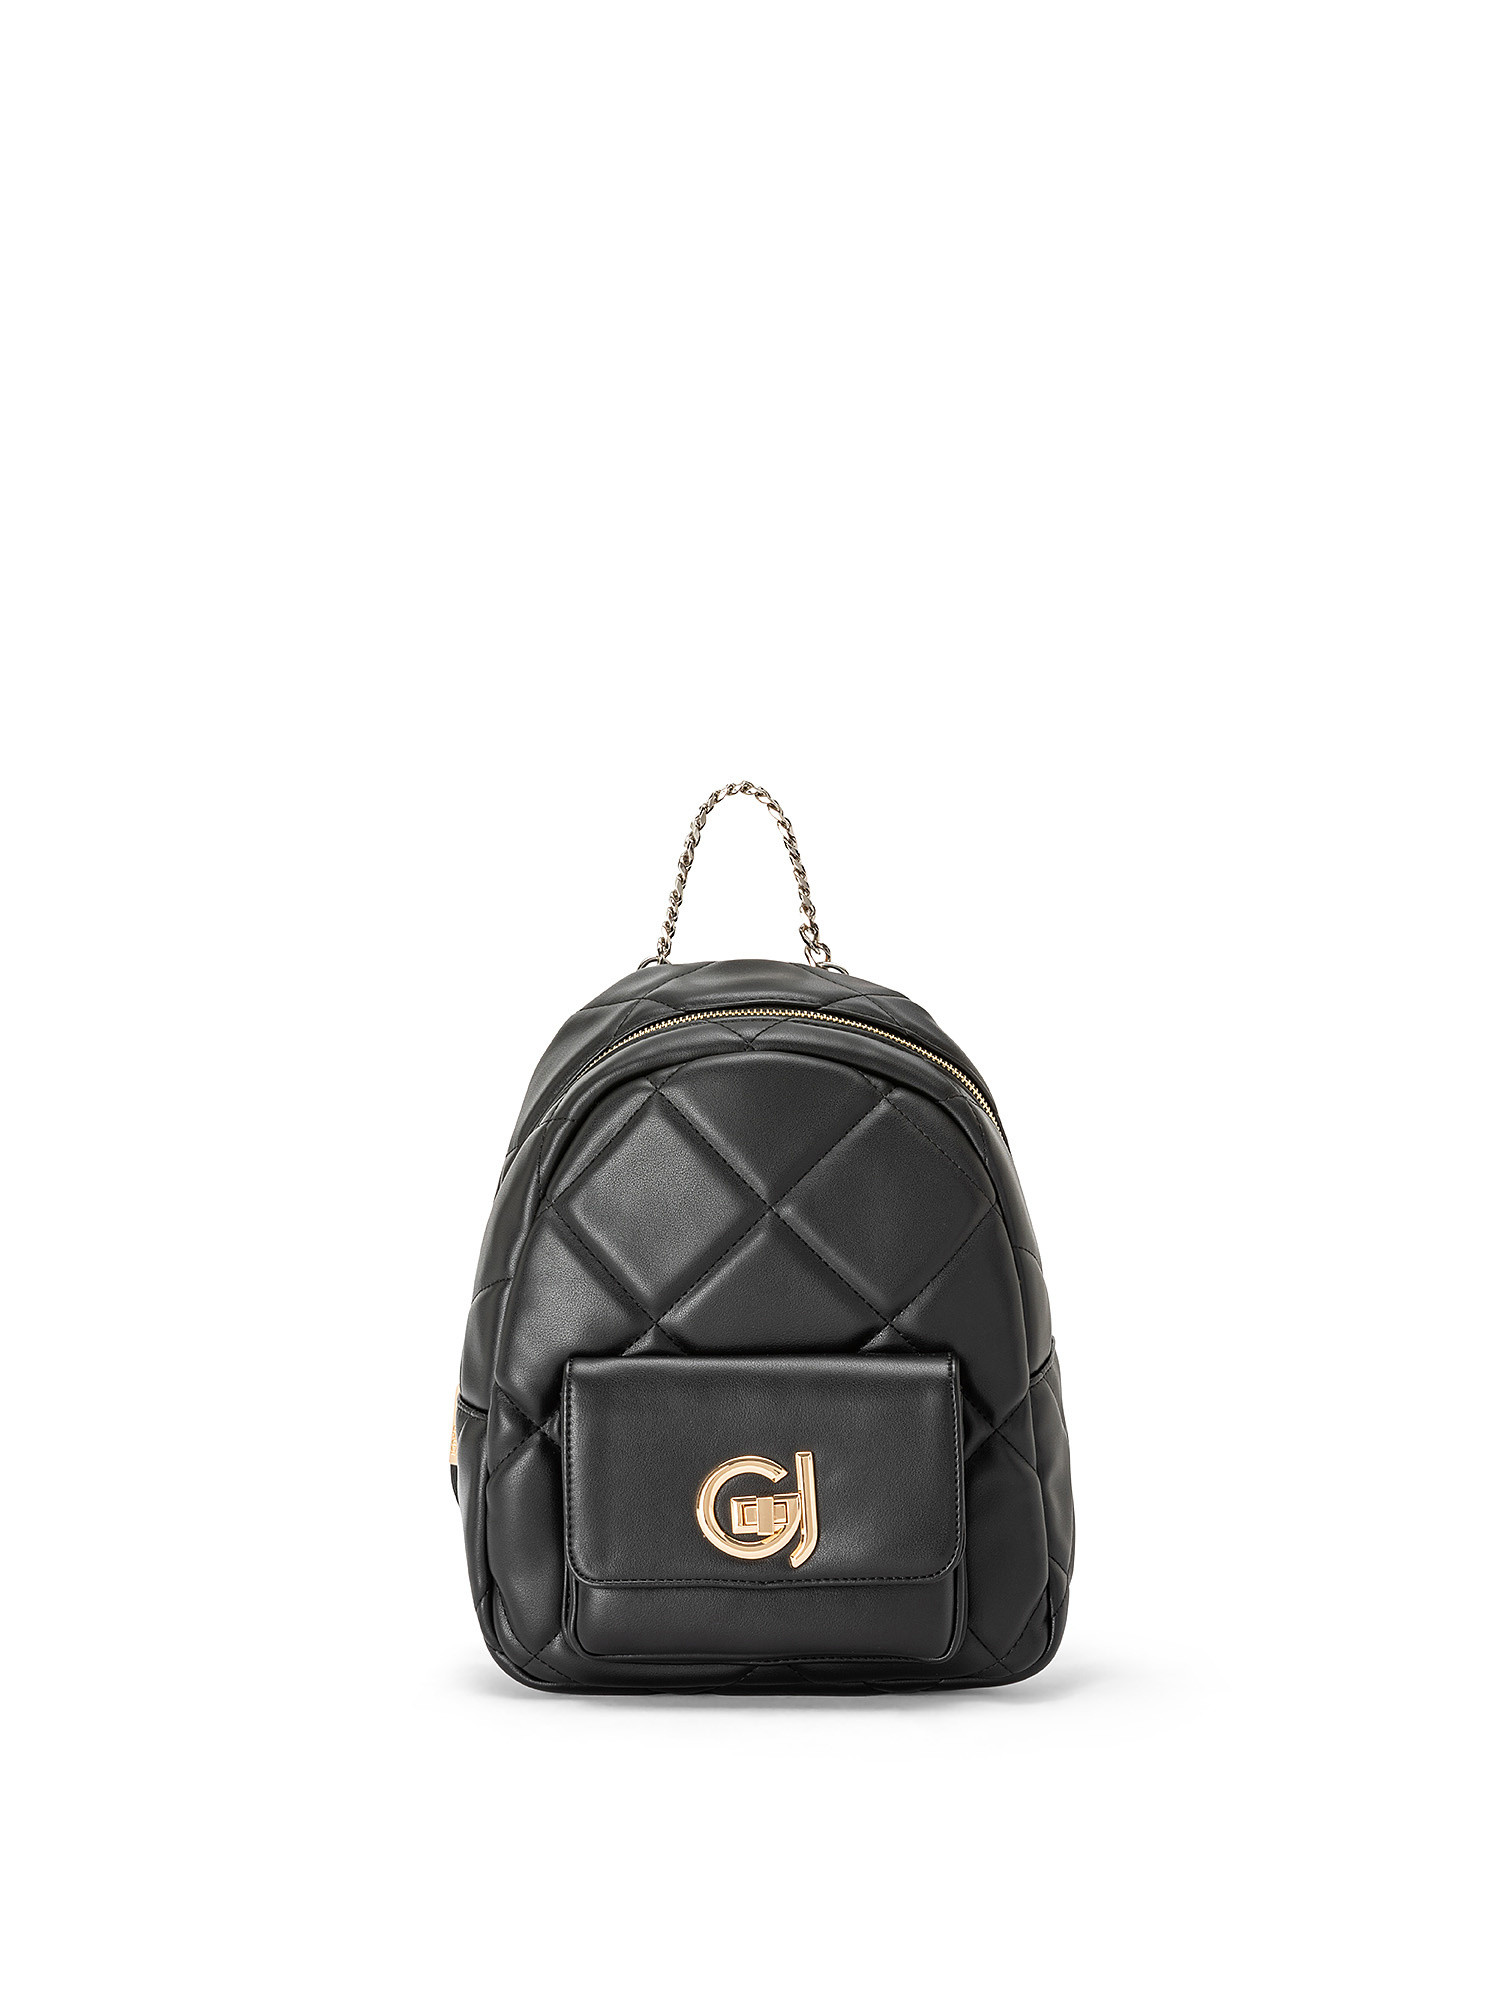 Gaudì - Moon backpack, Black, large image number 0